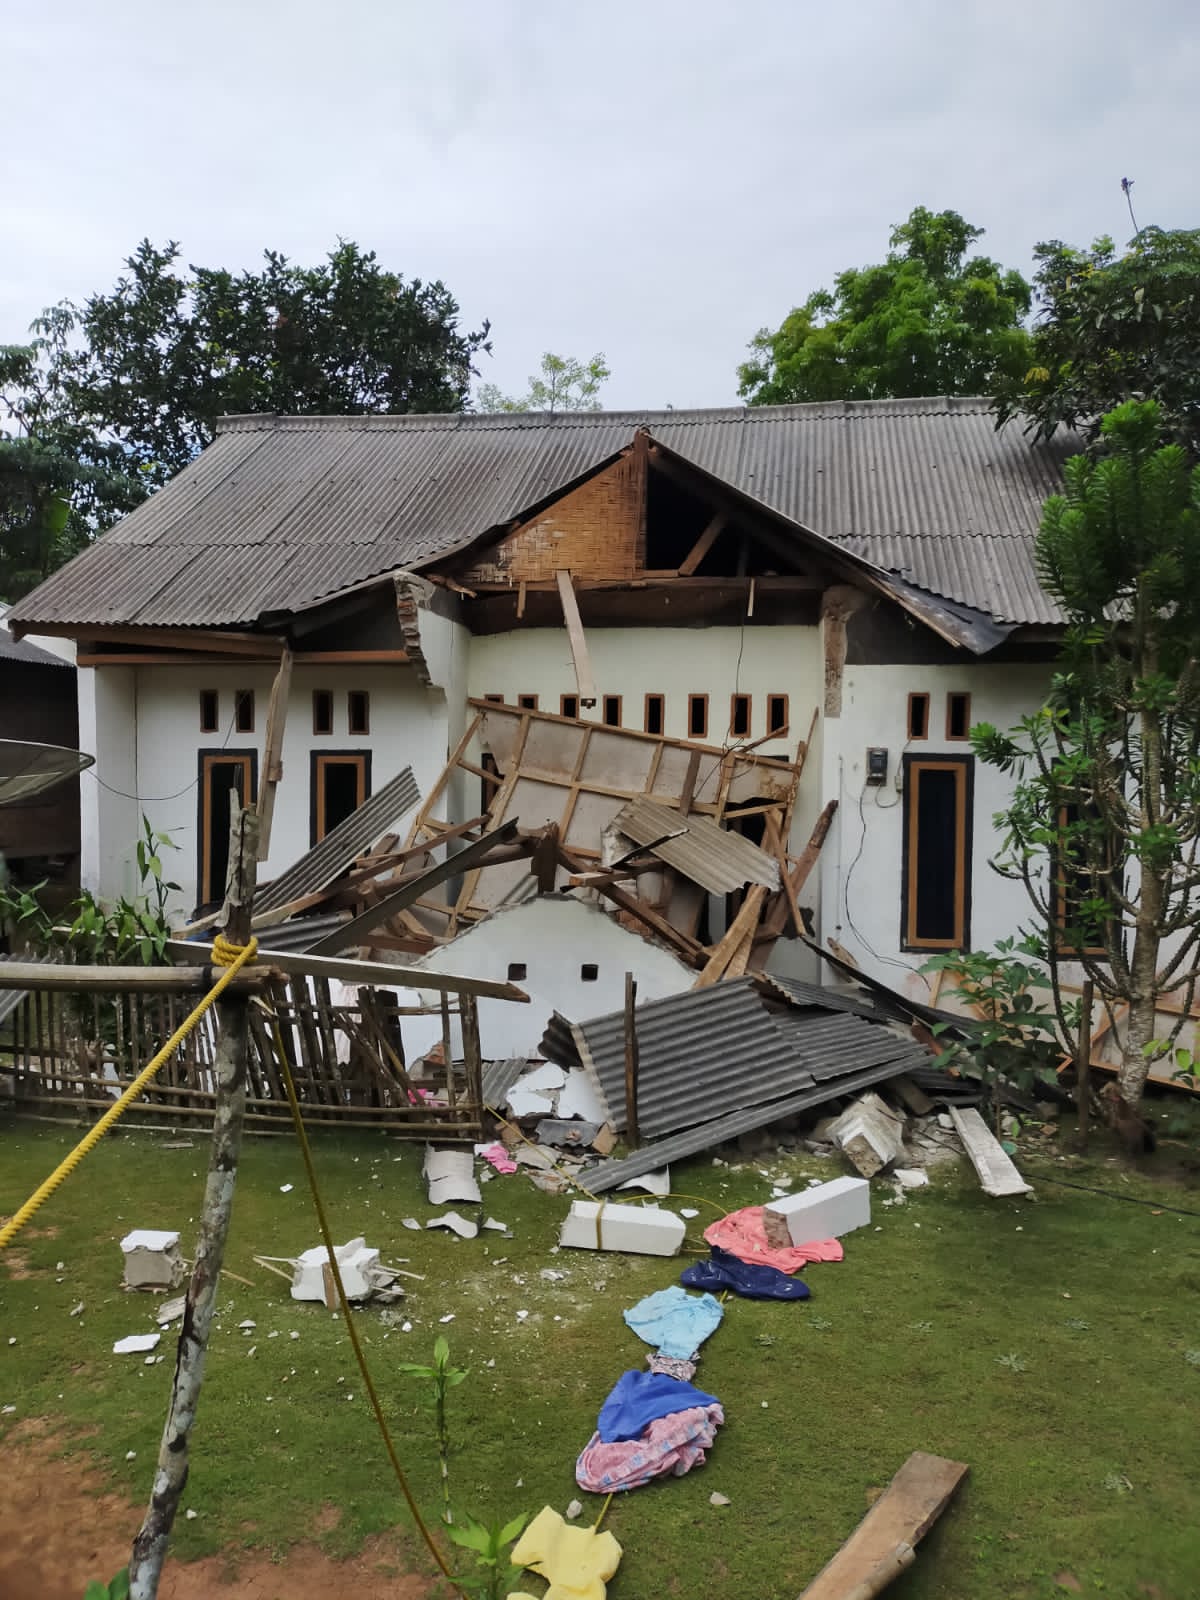 Gempa M 6,7 Guncang Banten, Sejumlah Rumah di Pandeglang Rusak